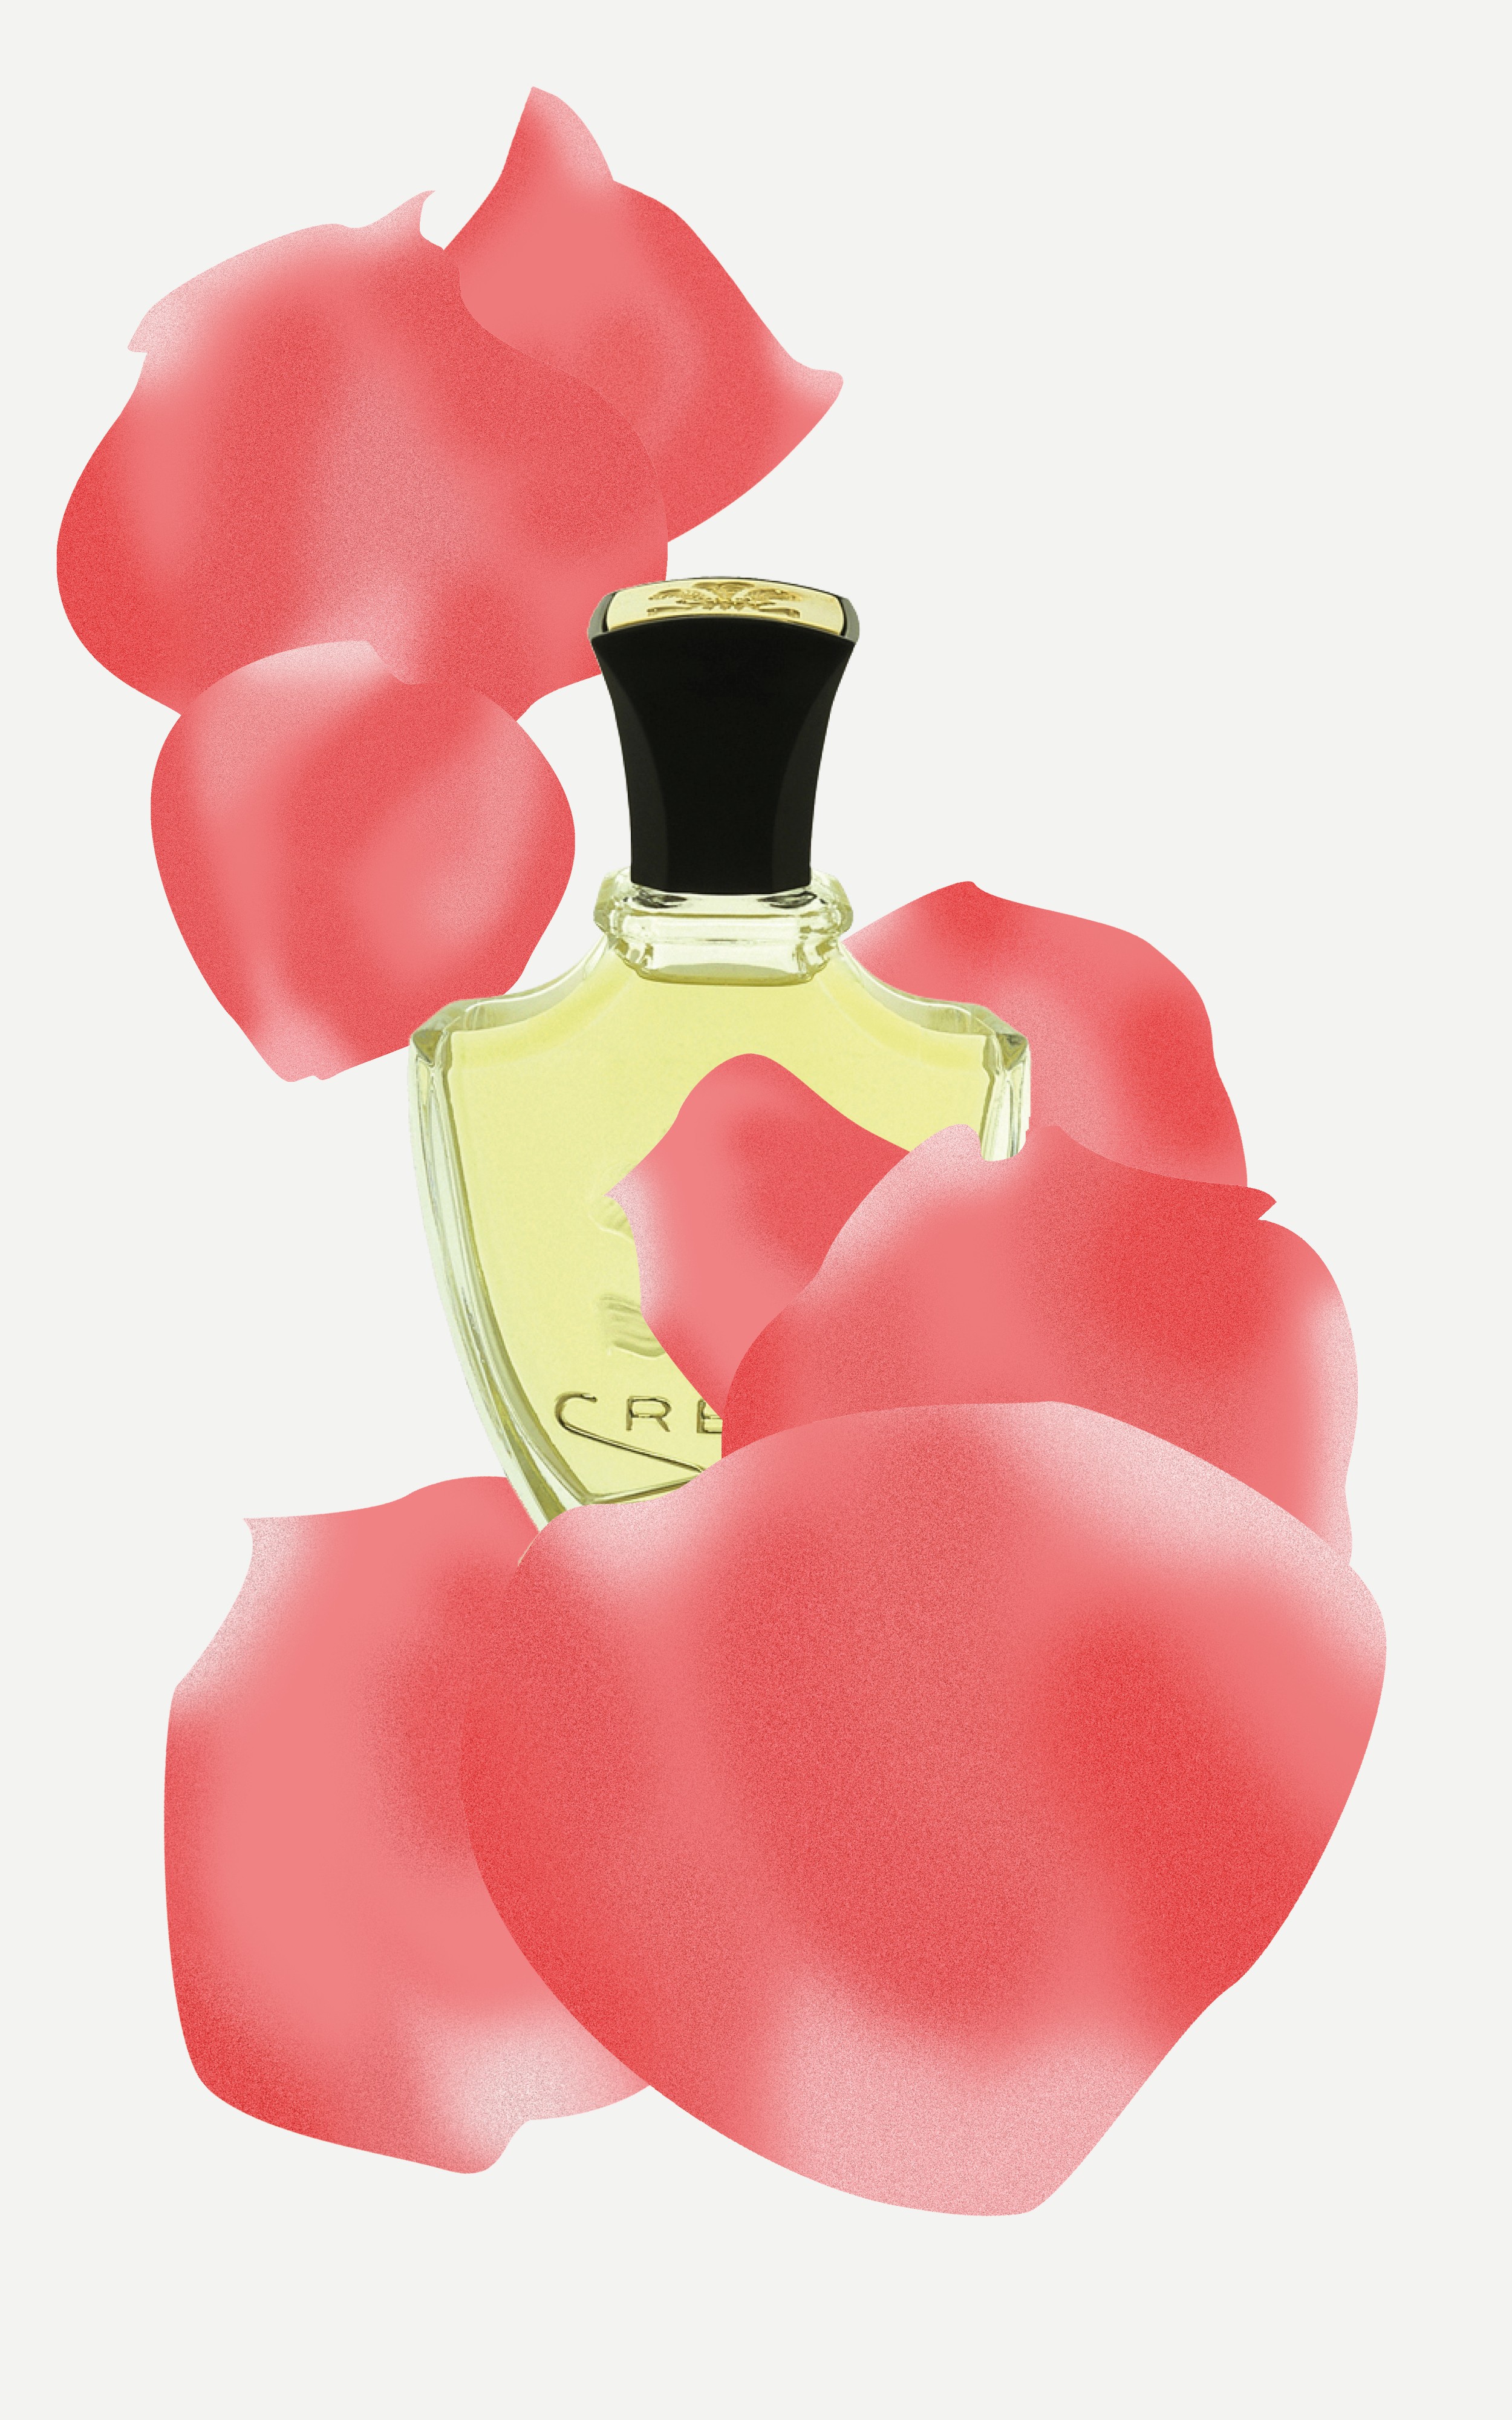 За что розу любят в парфюмерии и косметологии? И какая подойдет вам?